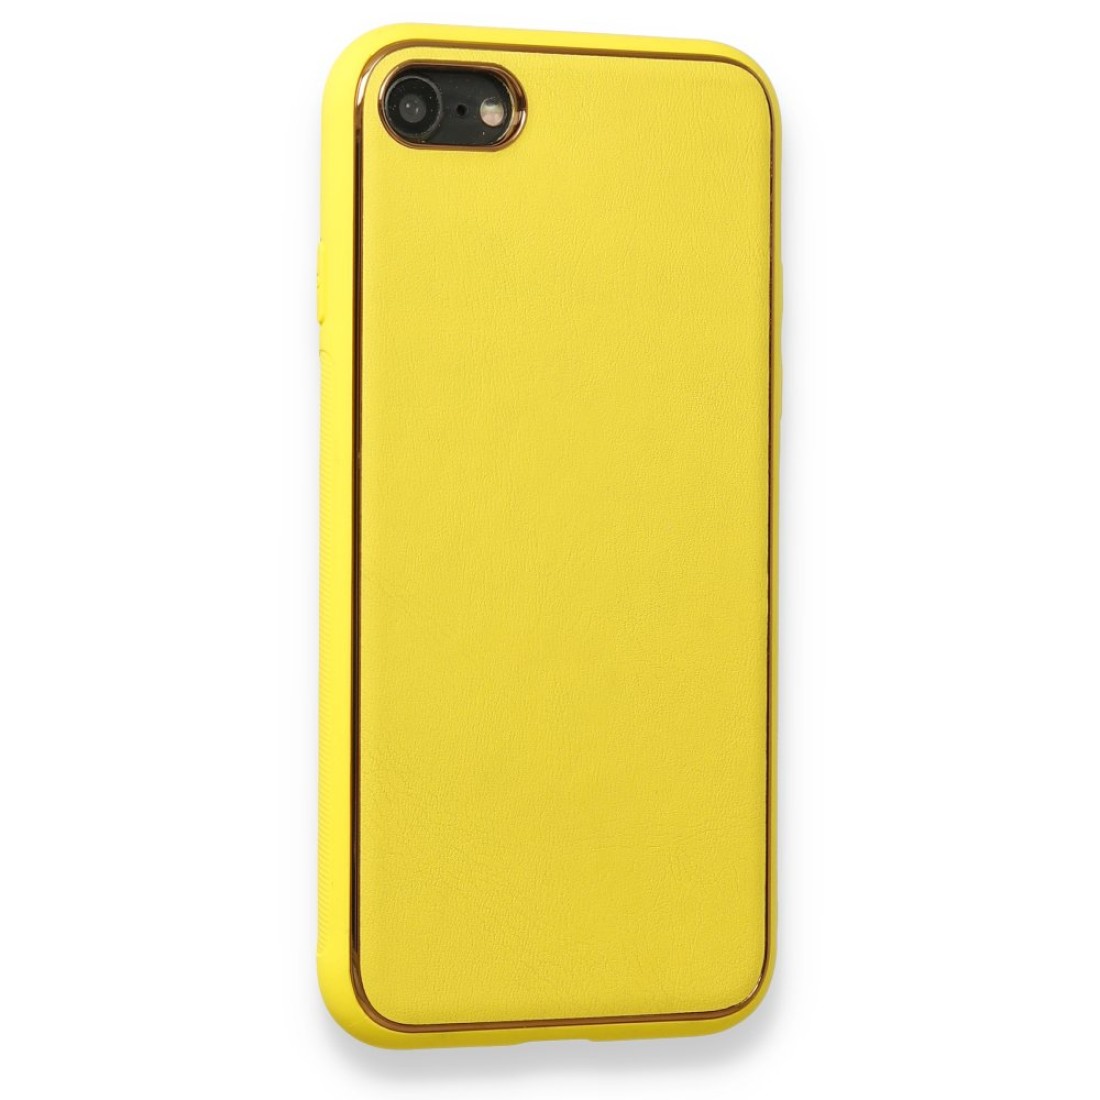 Apple iPhone SE 2020 Kılıf Coco Deri Silikon Kapak - Sarı